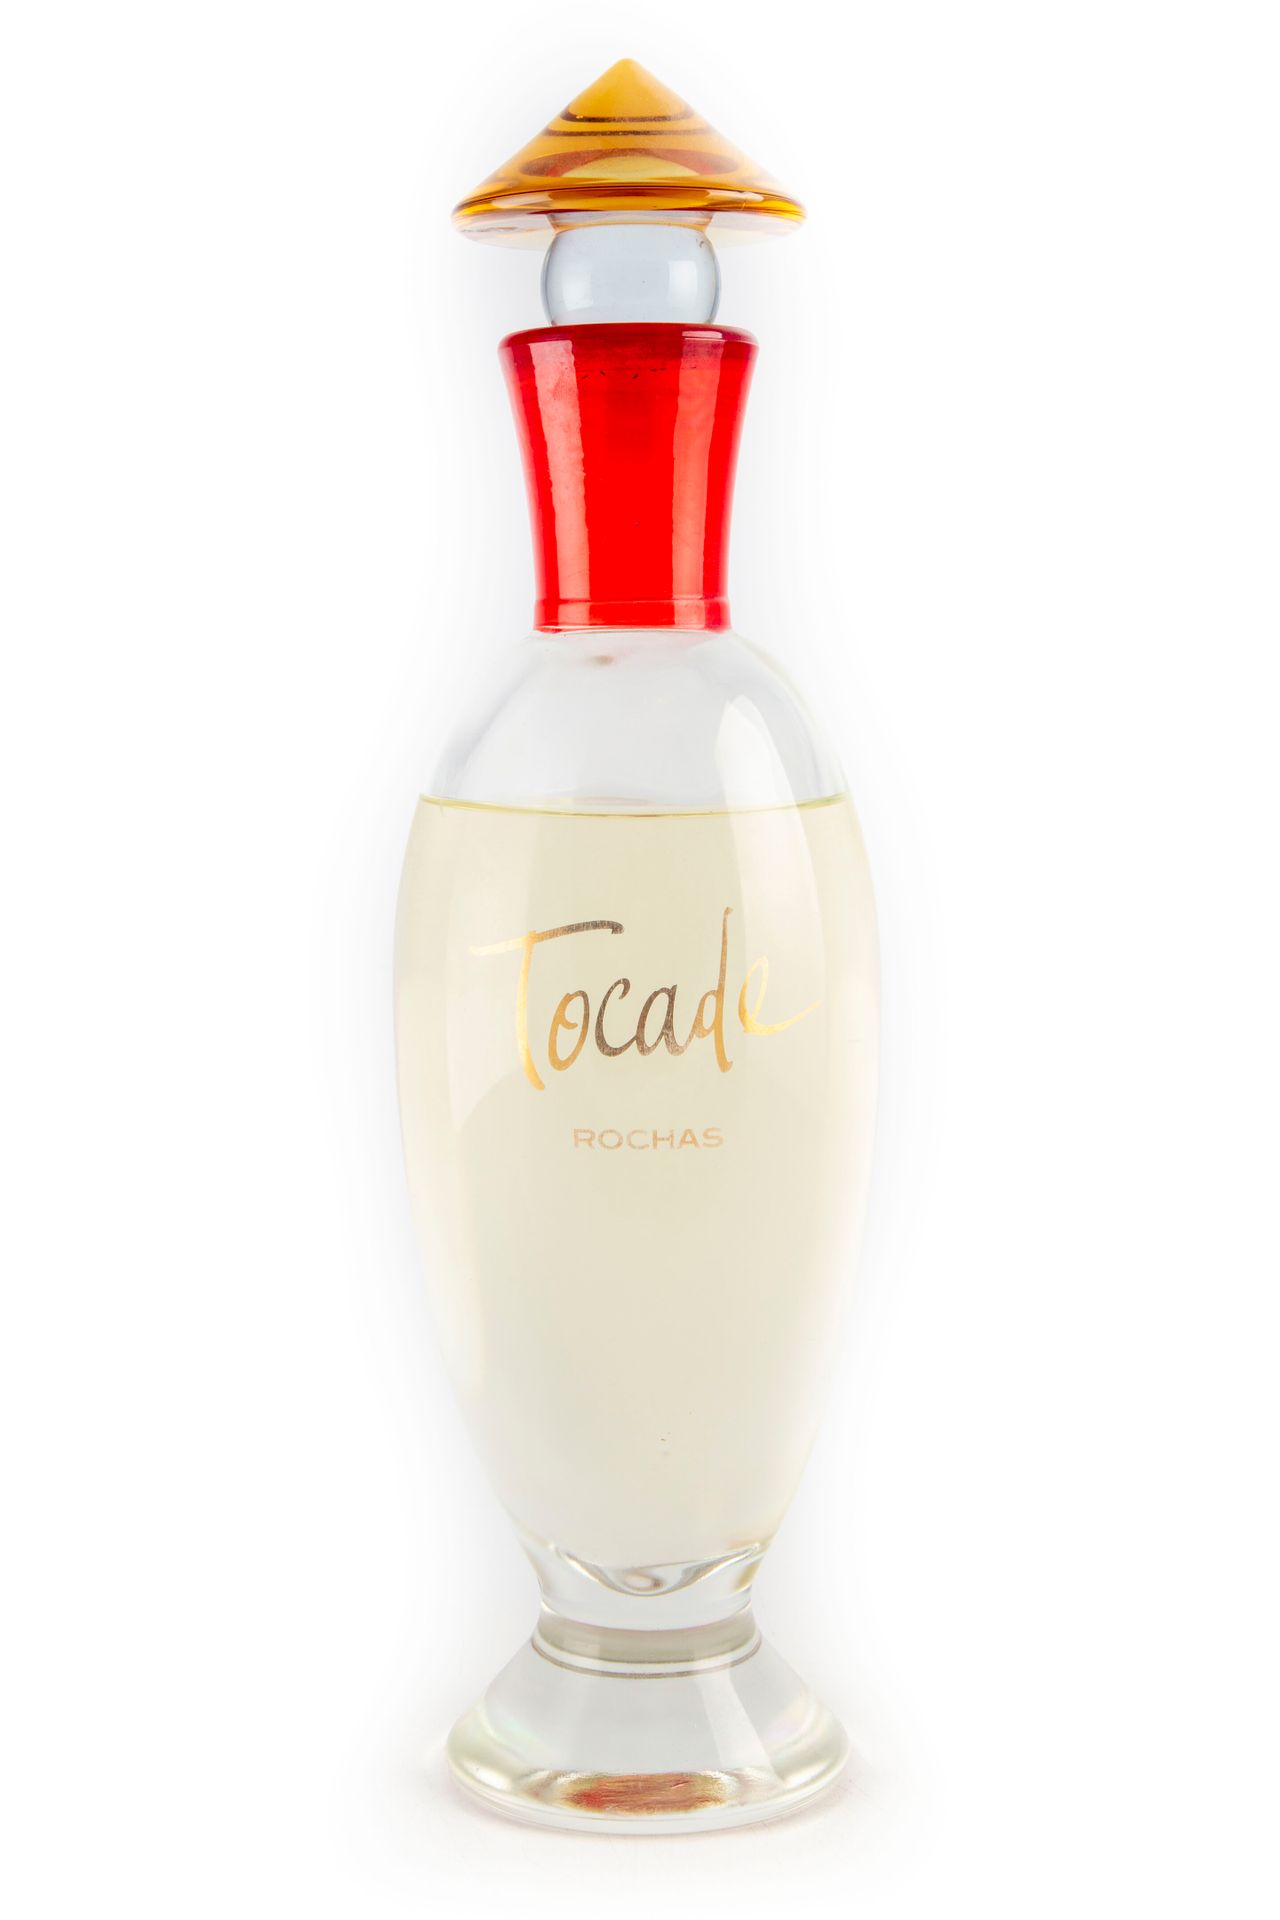 Null ROCHAS

Frasco de perfume "Tocade", falso

H. 41 cm